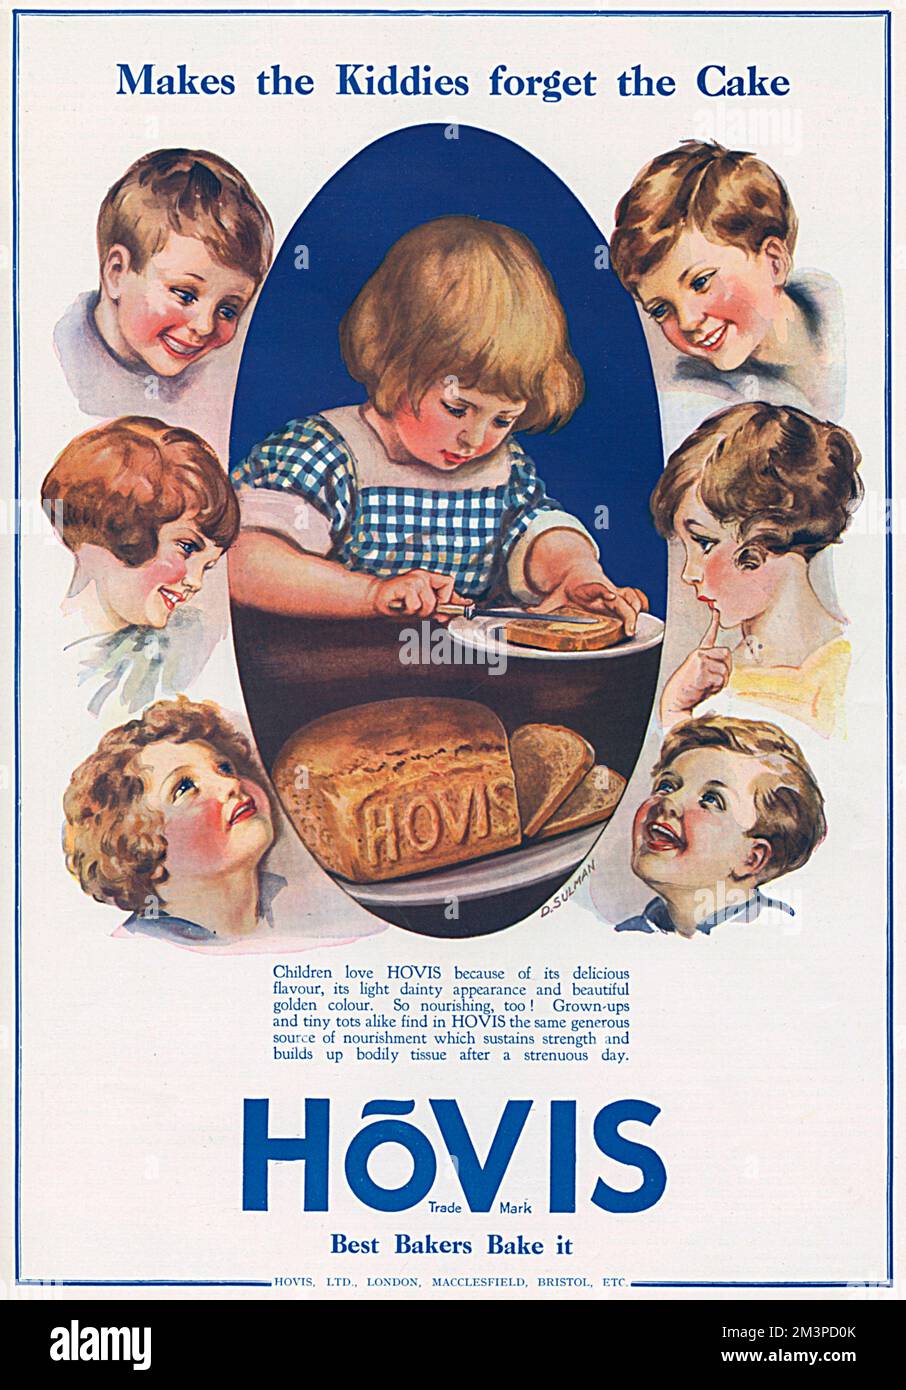 Lass die Kiddies den Kuchen vergessen. Werbung für Hovis-Brot mit einem jungen Mädchen, das ein Stück Vollkornbrot mit Butter verteilt. Datum: 1922 Stockfoto